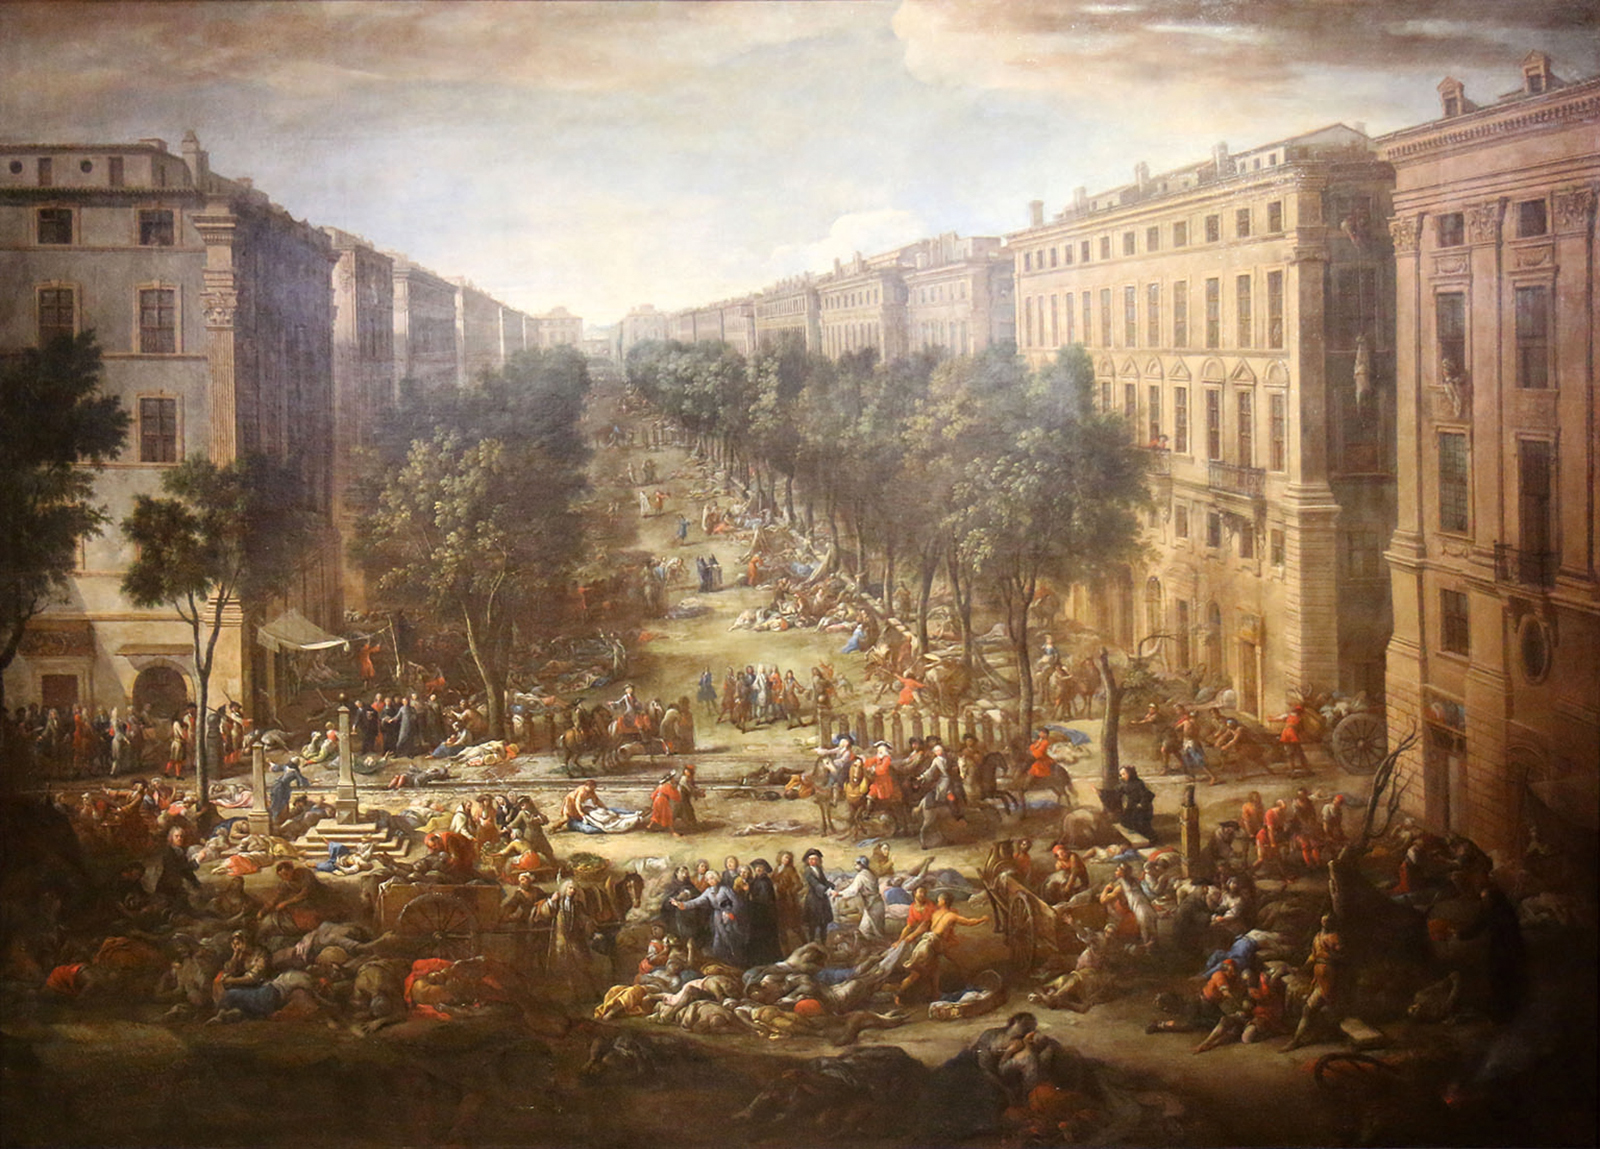 Vue du Cours pendant la peste de 1720, par Michel Serre (Domaine public, via Wikimedia Commons)